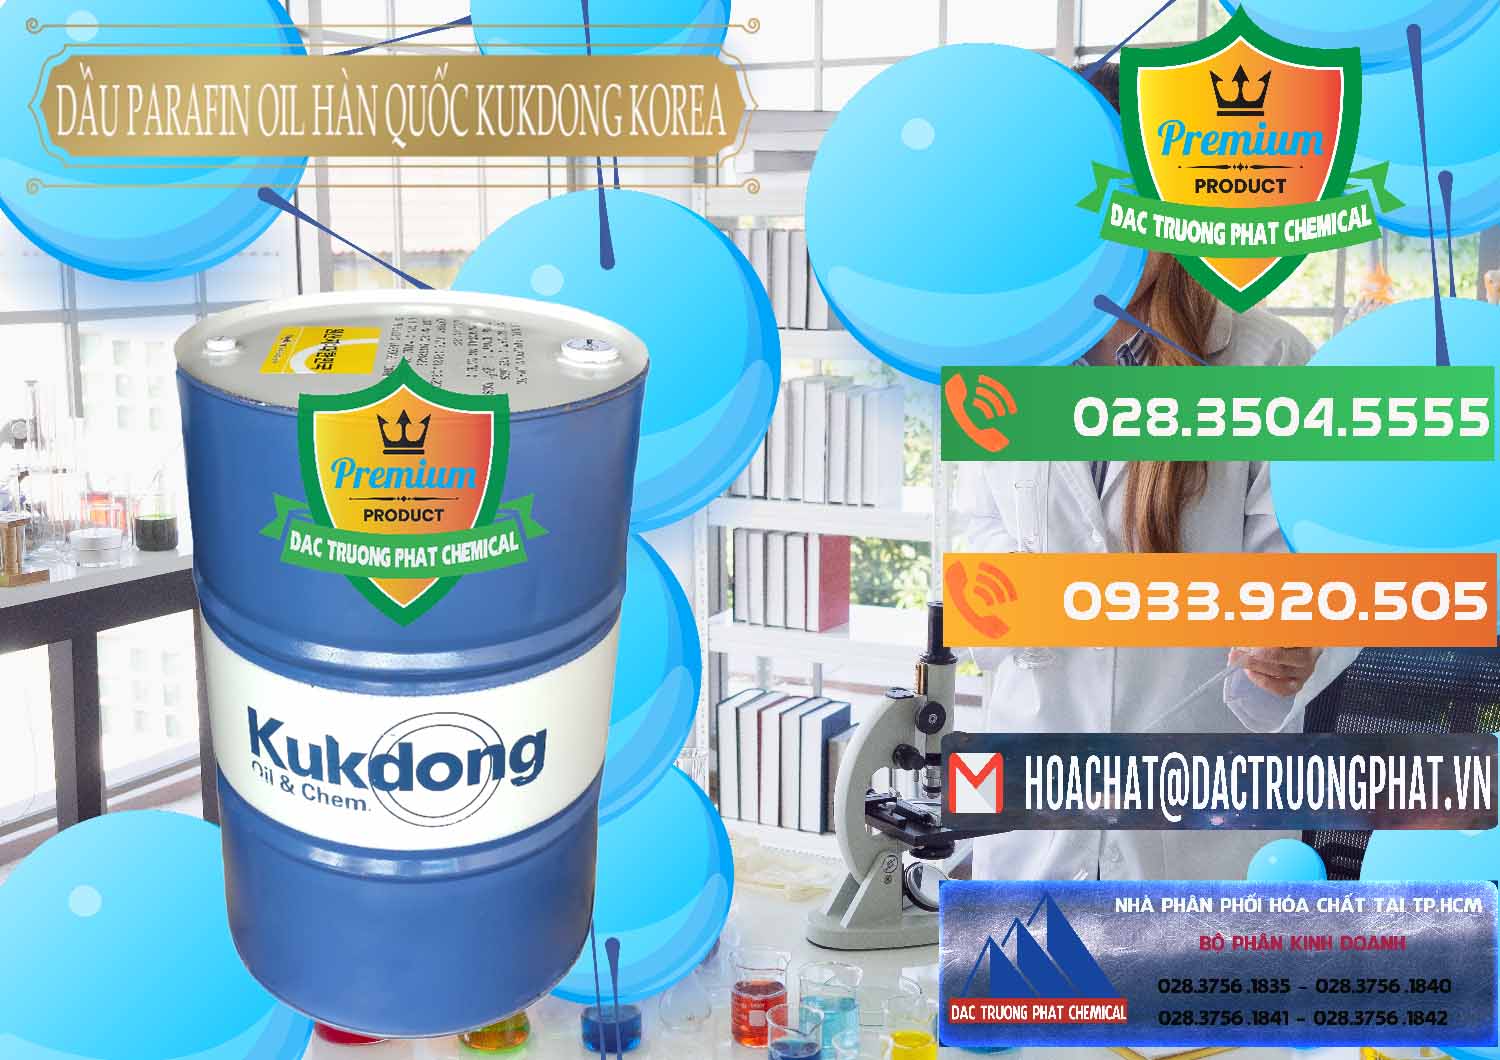 Công ty nhập khẩu - bán Dầu Parafin Oil Hàn Quốc Korea Kukdong - 0060 - Đơn vị chuyên cung cấp và kinh doanh hóa chất tại TP.HCM - hoachatxulynuoc.com.vn